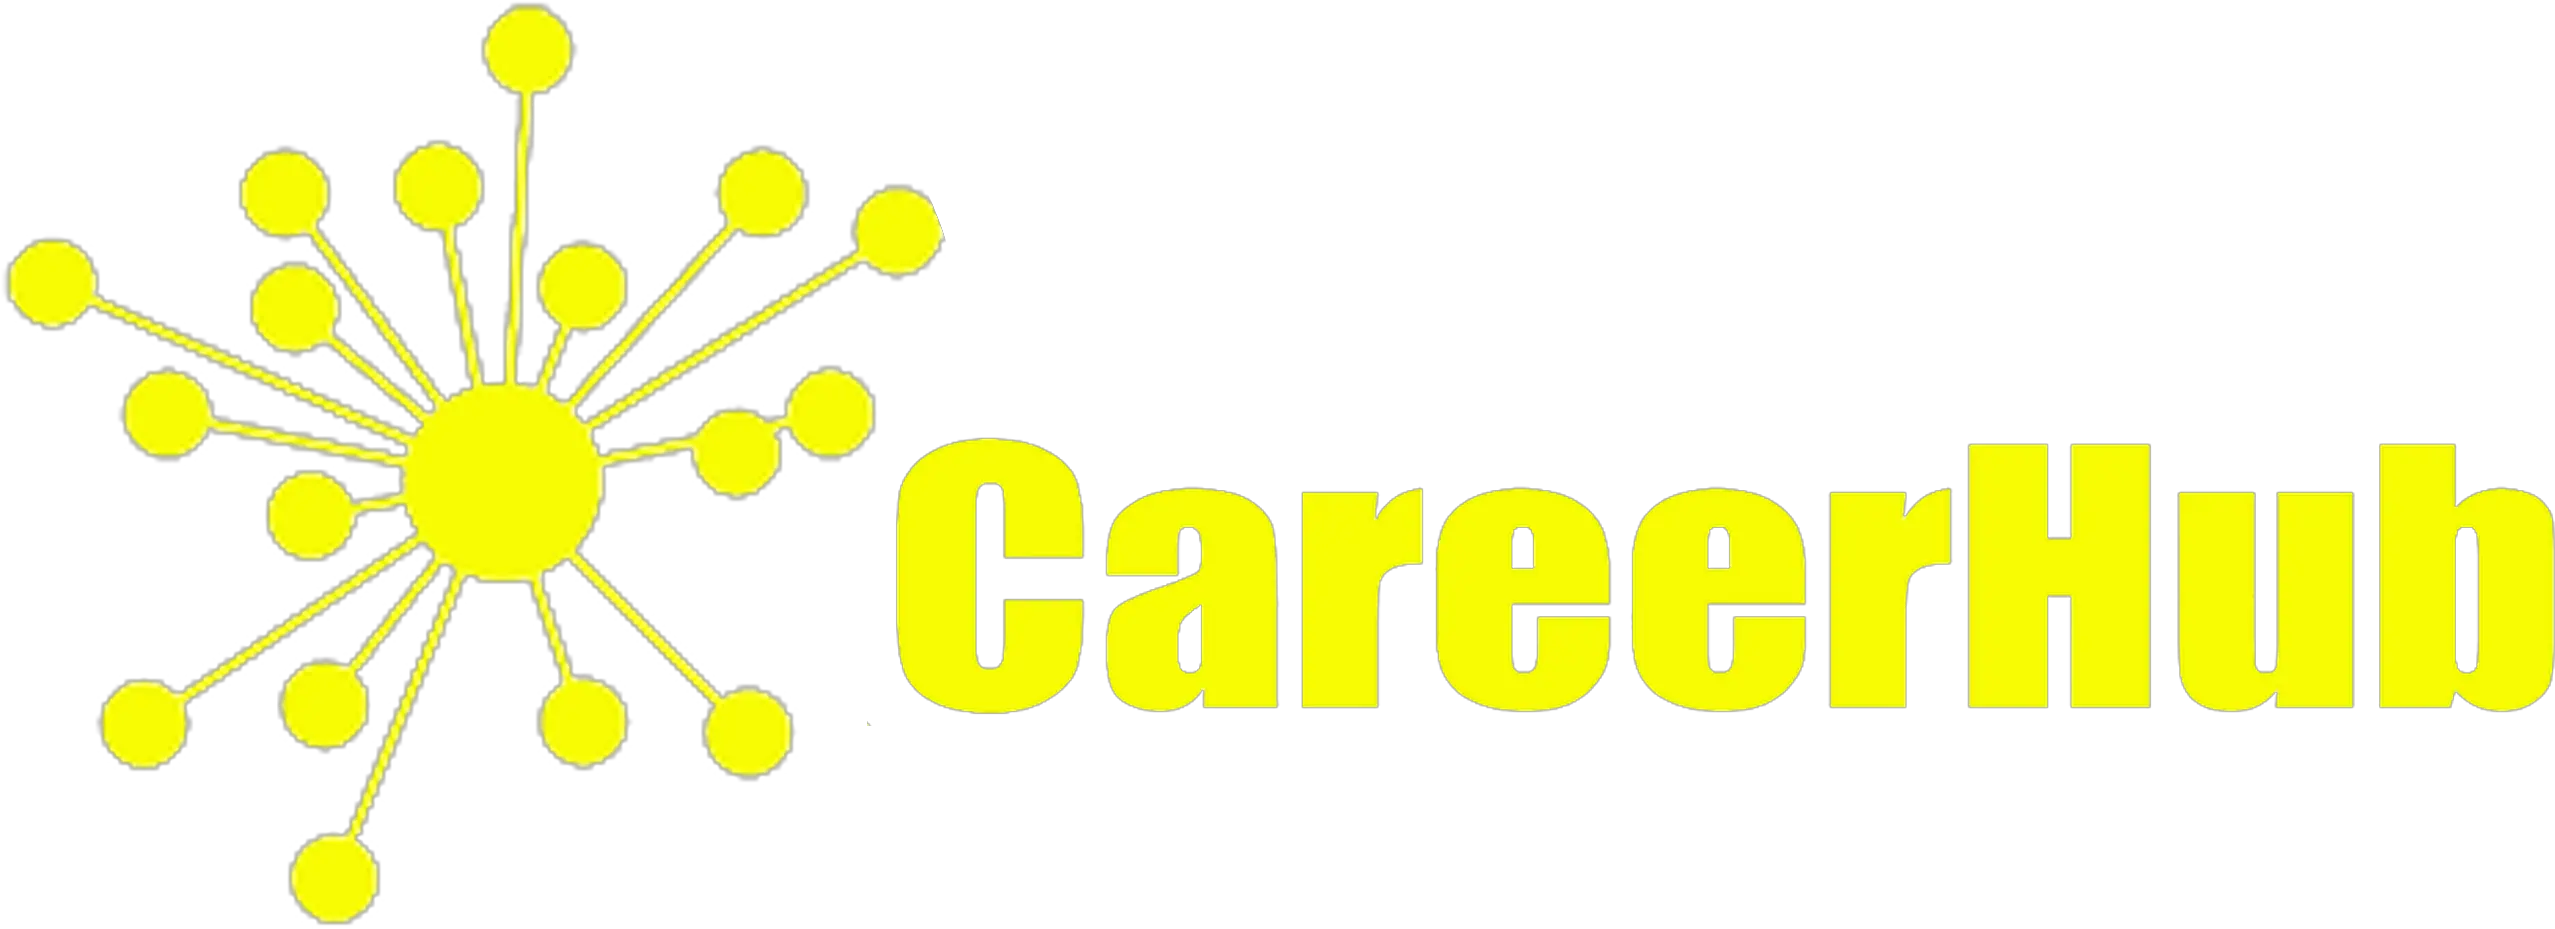 Digital Incubation Center Careerhub Logo Png Dic Entertainment Logo